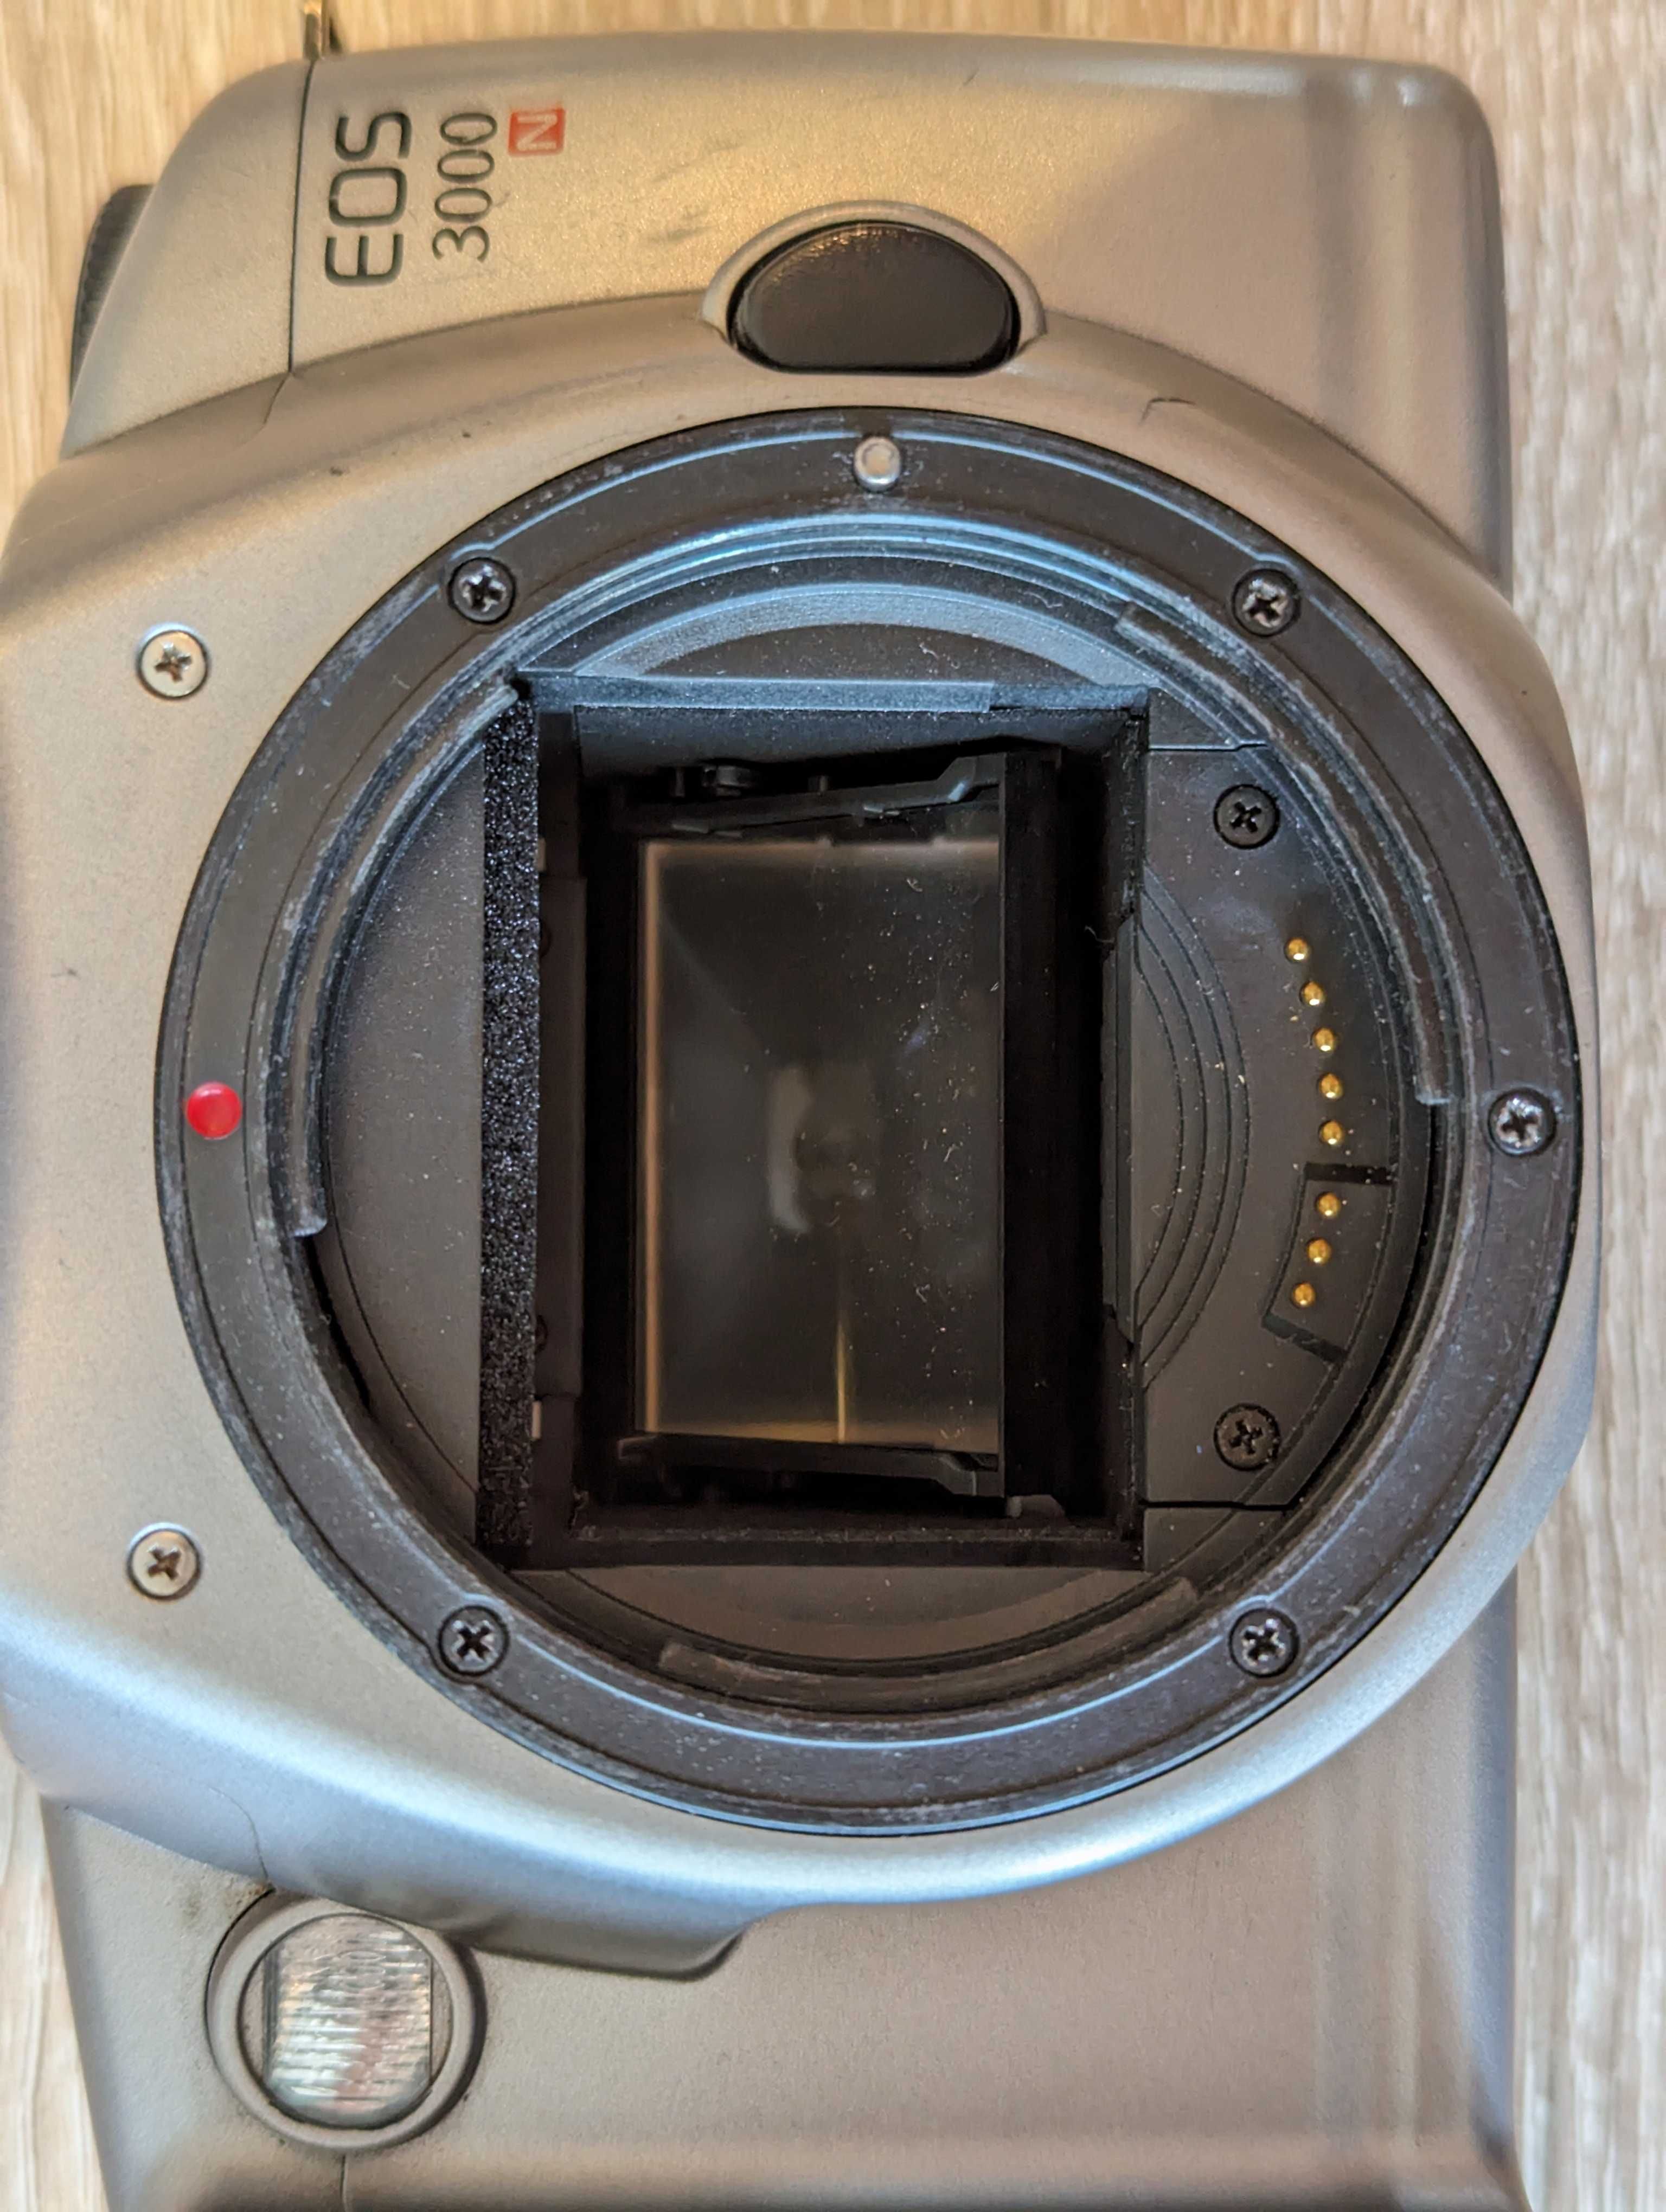 Lustrzanka analogowa Canon EOS 3000N